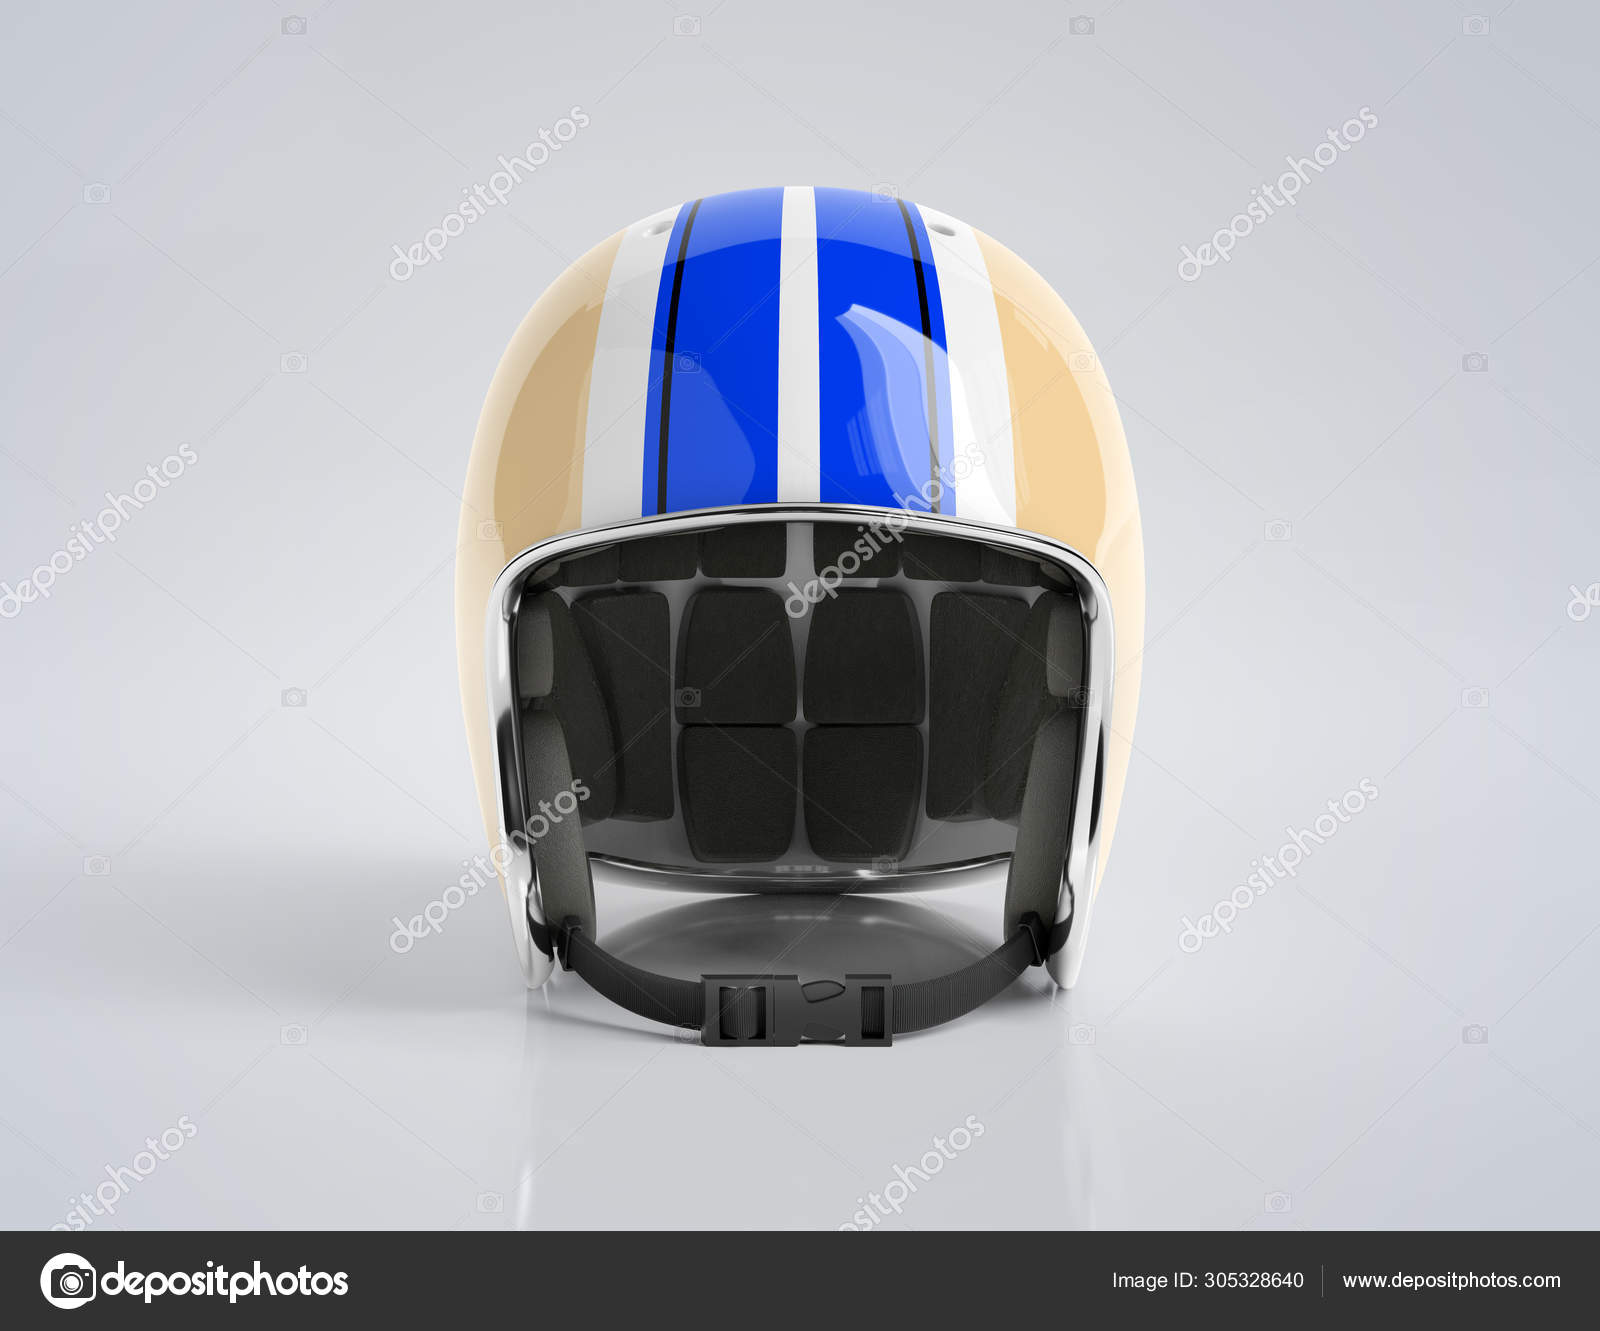 ヘルメット写真素材 ロイヤリティフリーヘルメット画像 Depositphotos